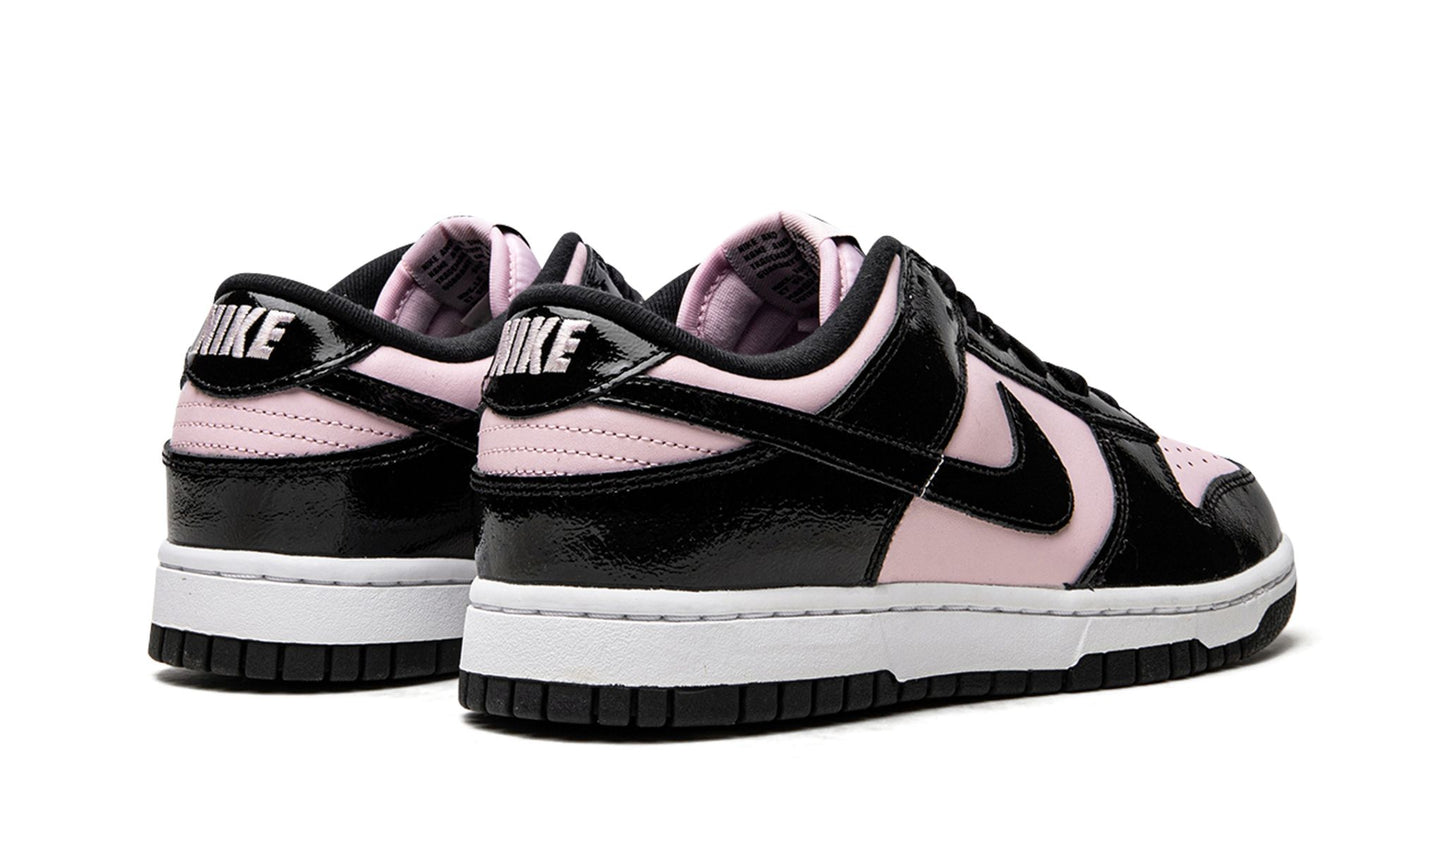 Nike Dunk Low "Pink / Black Patent"